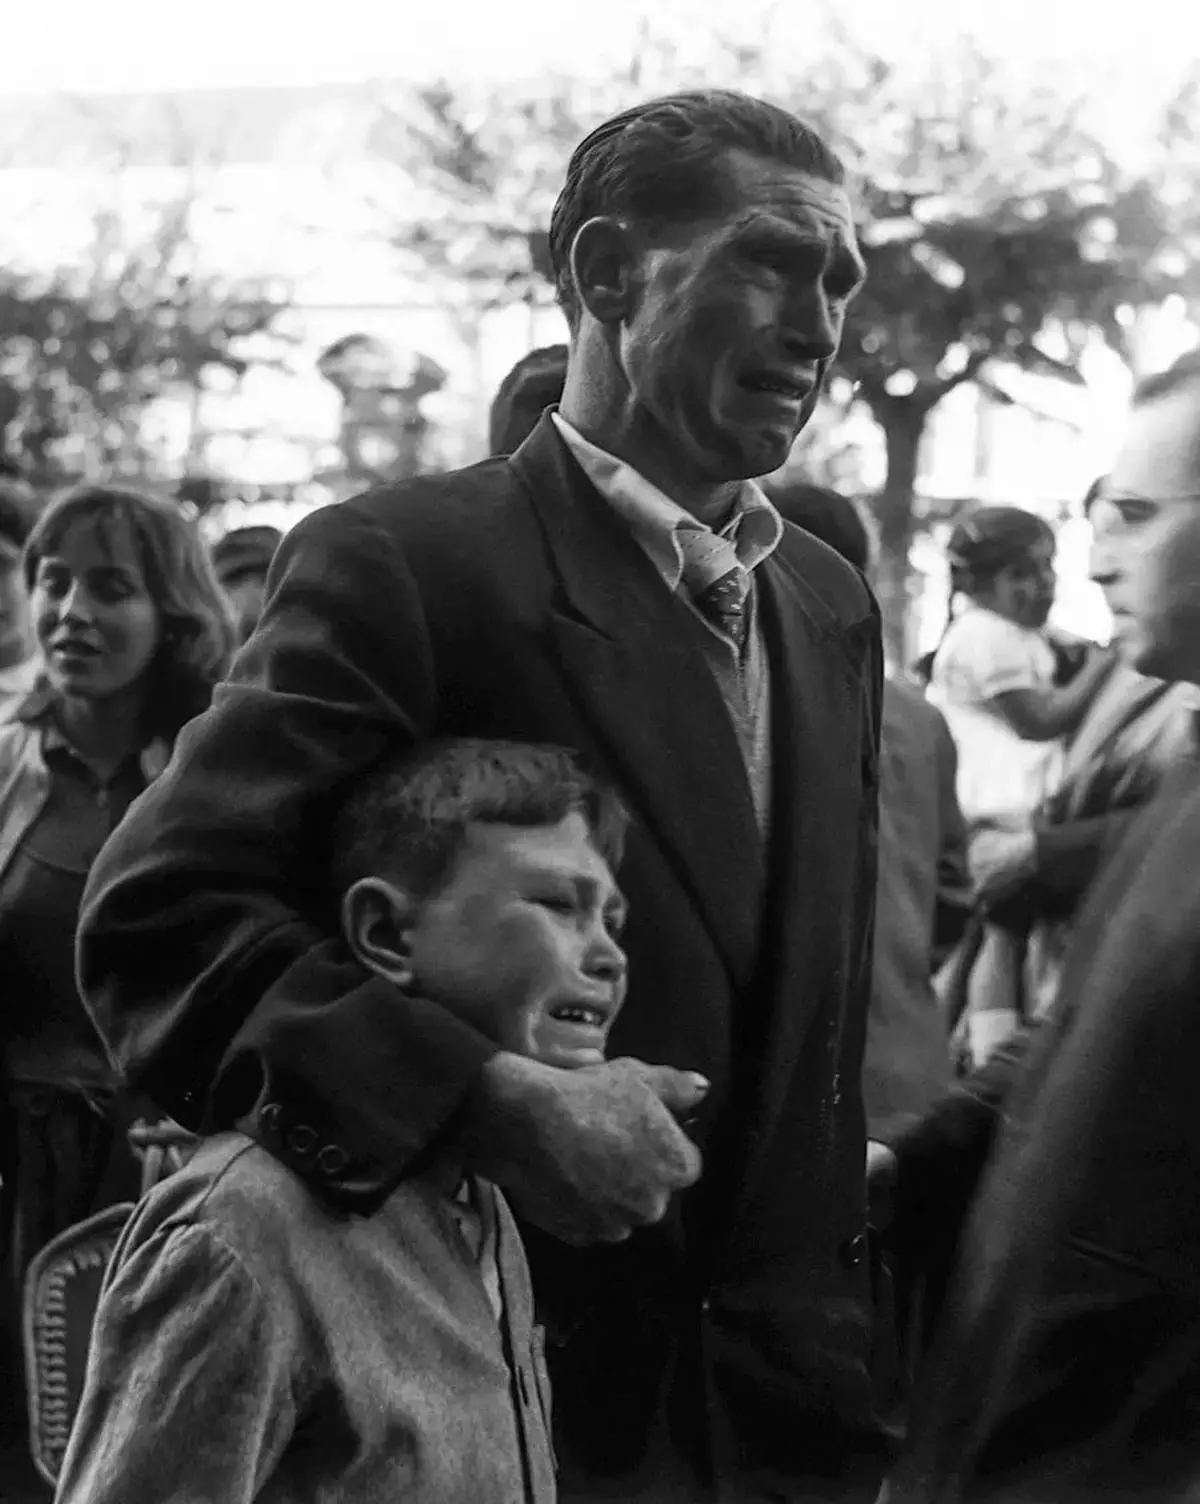 Muere Juan Jesús Calo, el niño protagonista de la histórica fotografía de Manuel Ferrol sobre la emigración